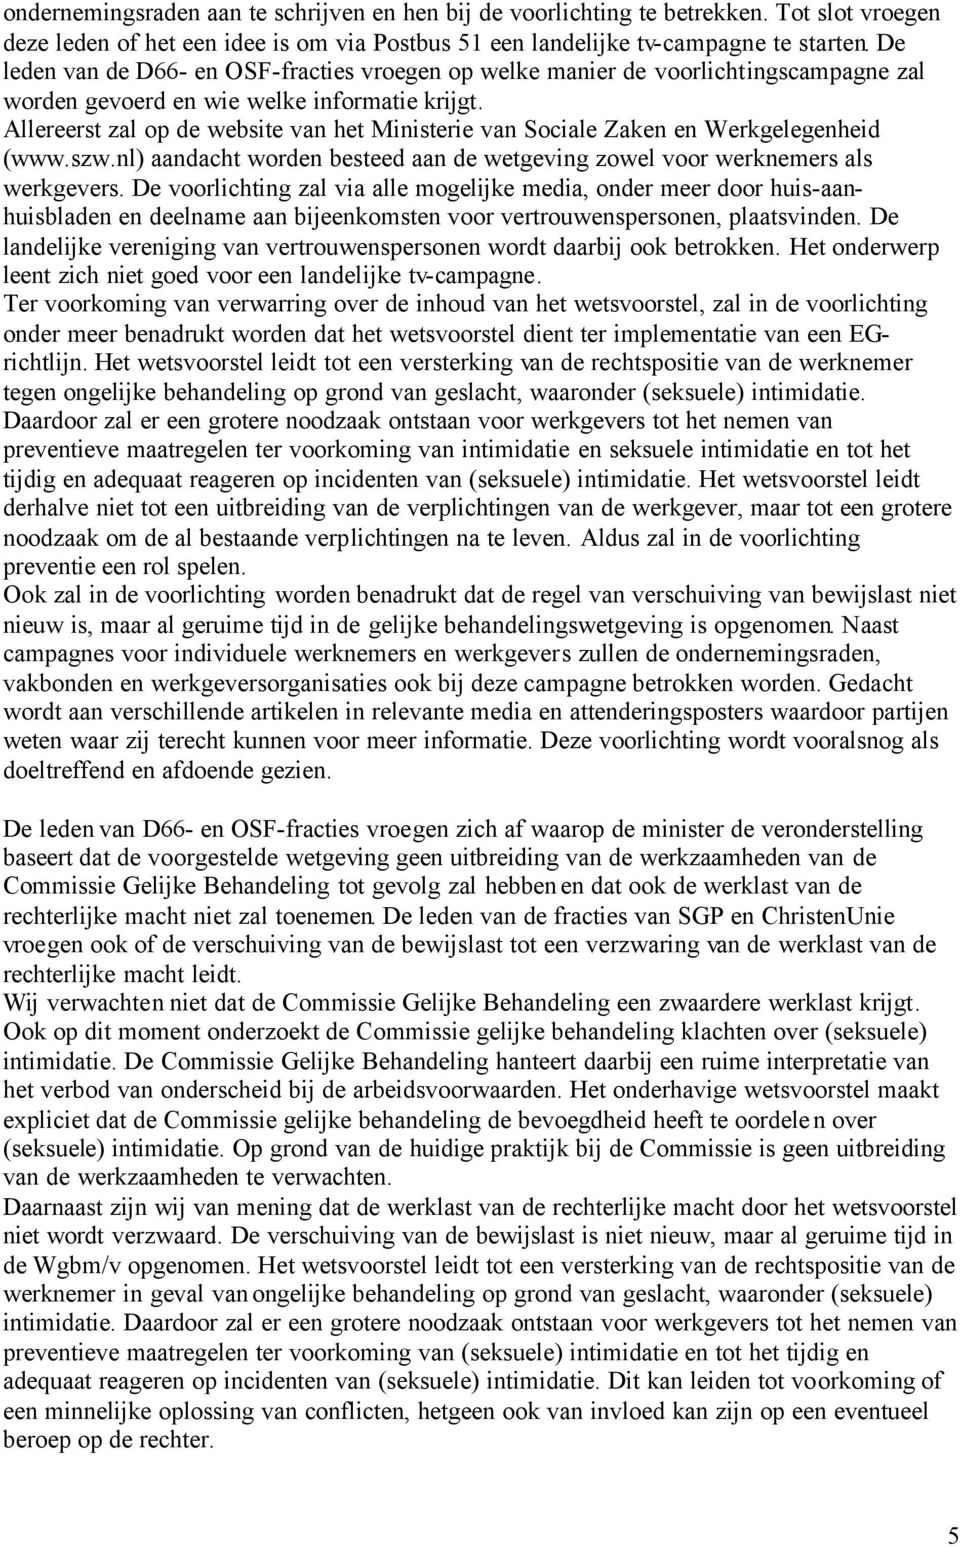 Allereerst zal op de website van het Ministerie van Sociale Zaken en Werkgelegenheid (www.szw.nl) aandacht worden besteed aan de wetgeving zowel voor werknemers als werkgevers.